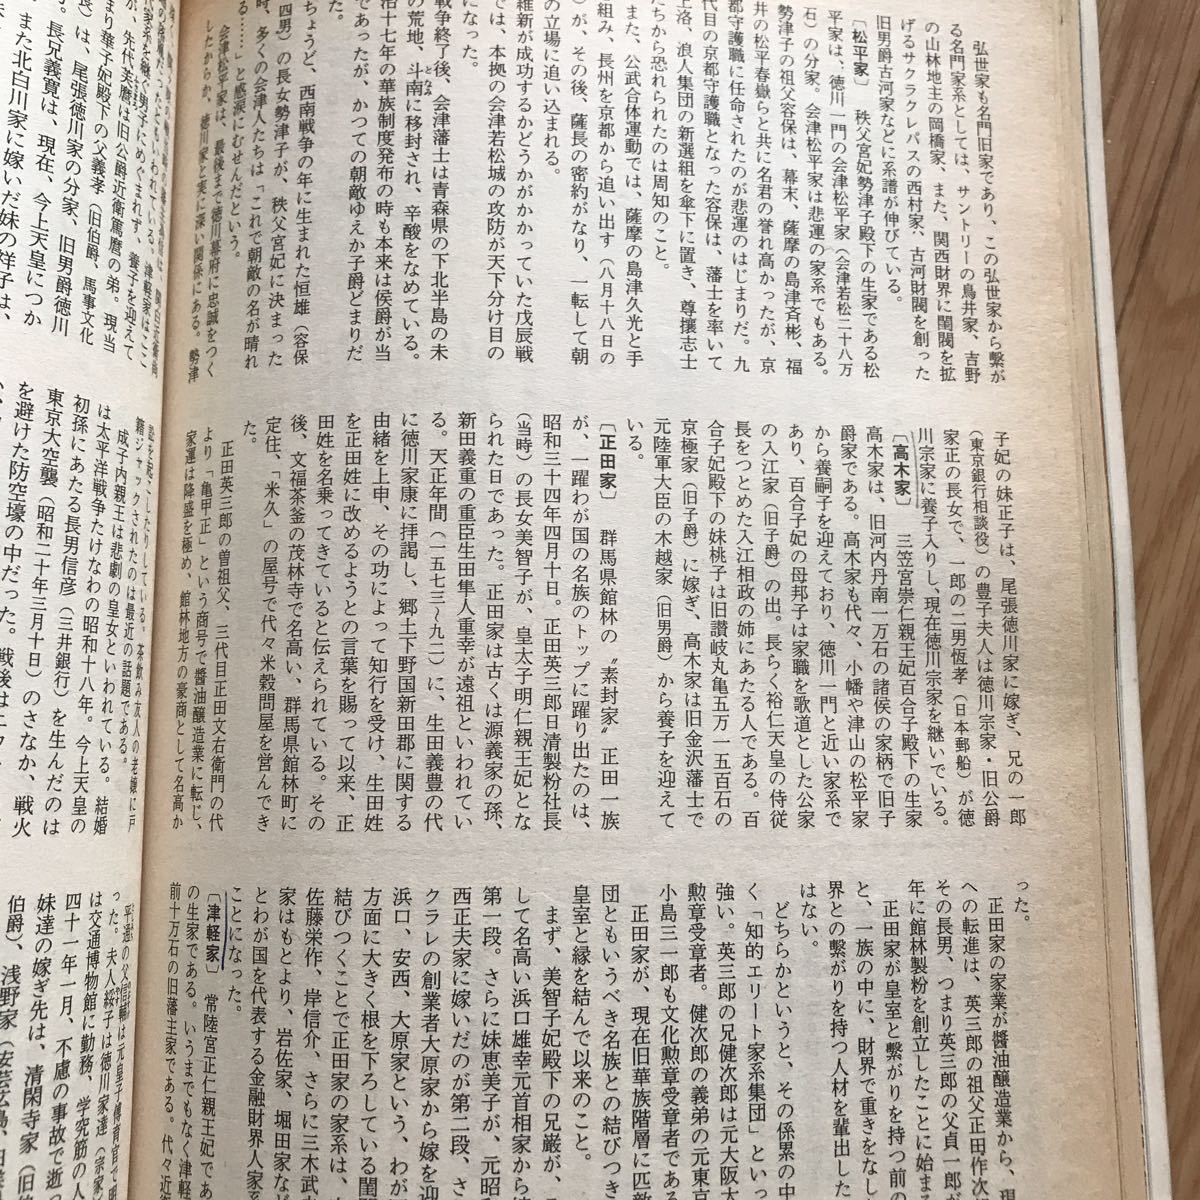 別冊歴史読本 49 天皇家と日本の名族 歴史を動かした連綿たる名家の血脈 第12巻第3号 3ページにボールペンと鉛筆による書き込み有り_画像4